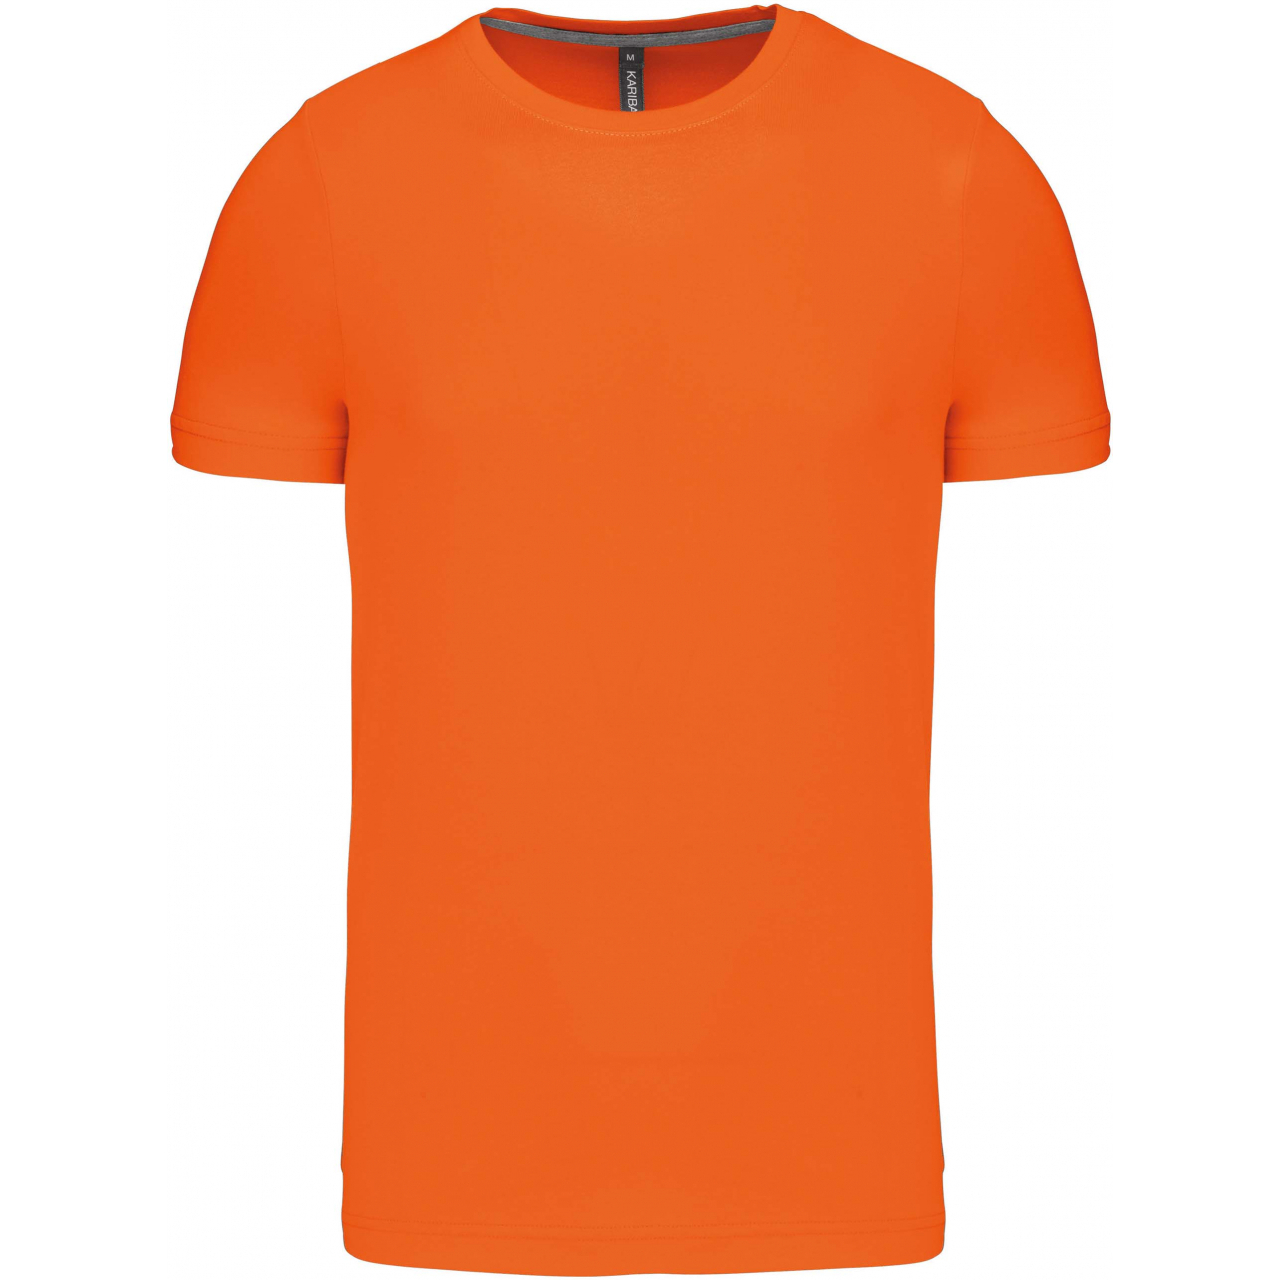 Pánské tričko Kariban krátký rukáv - oranžové, S